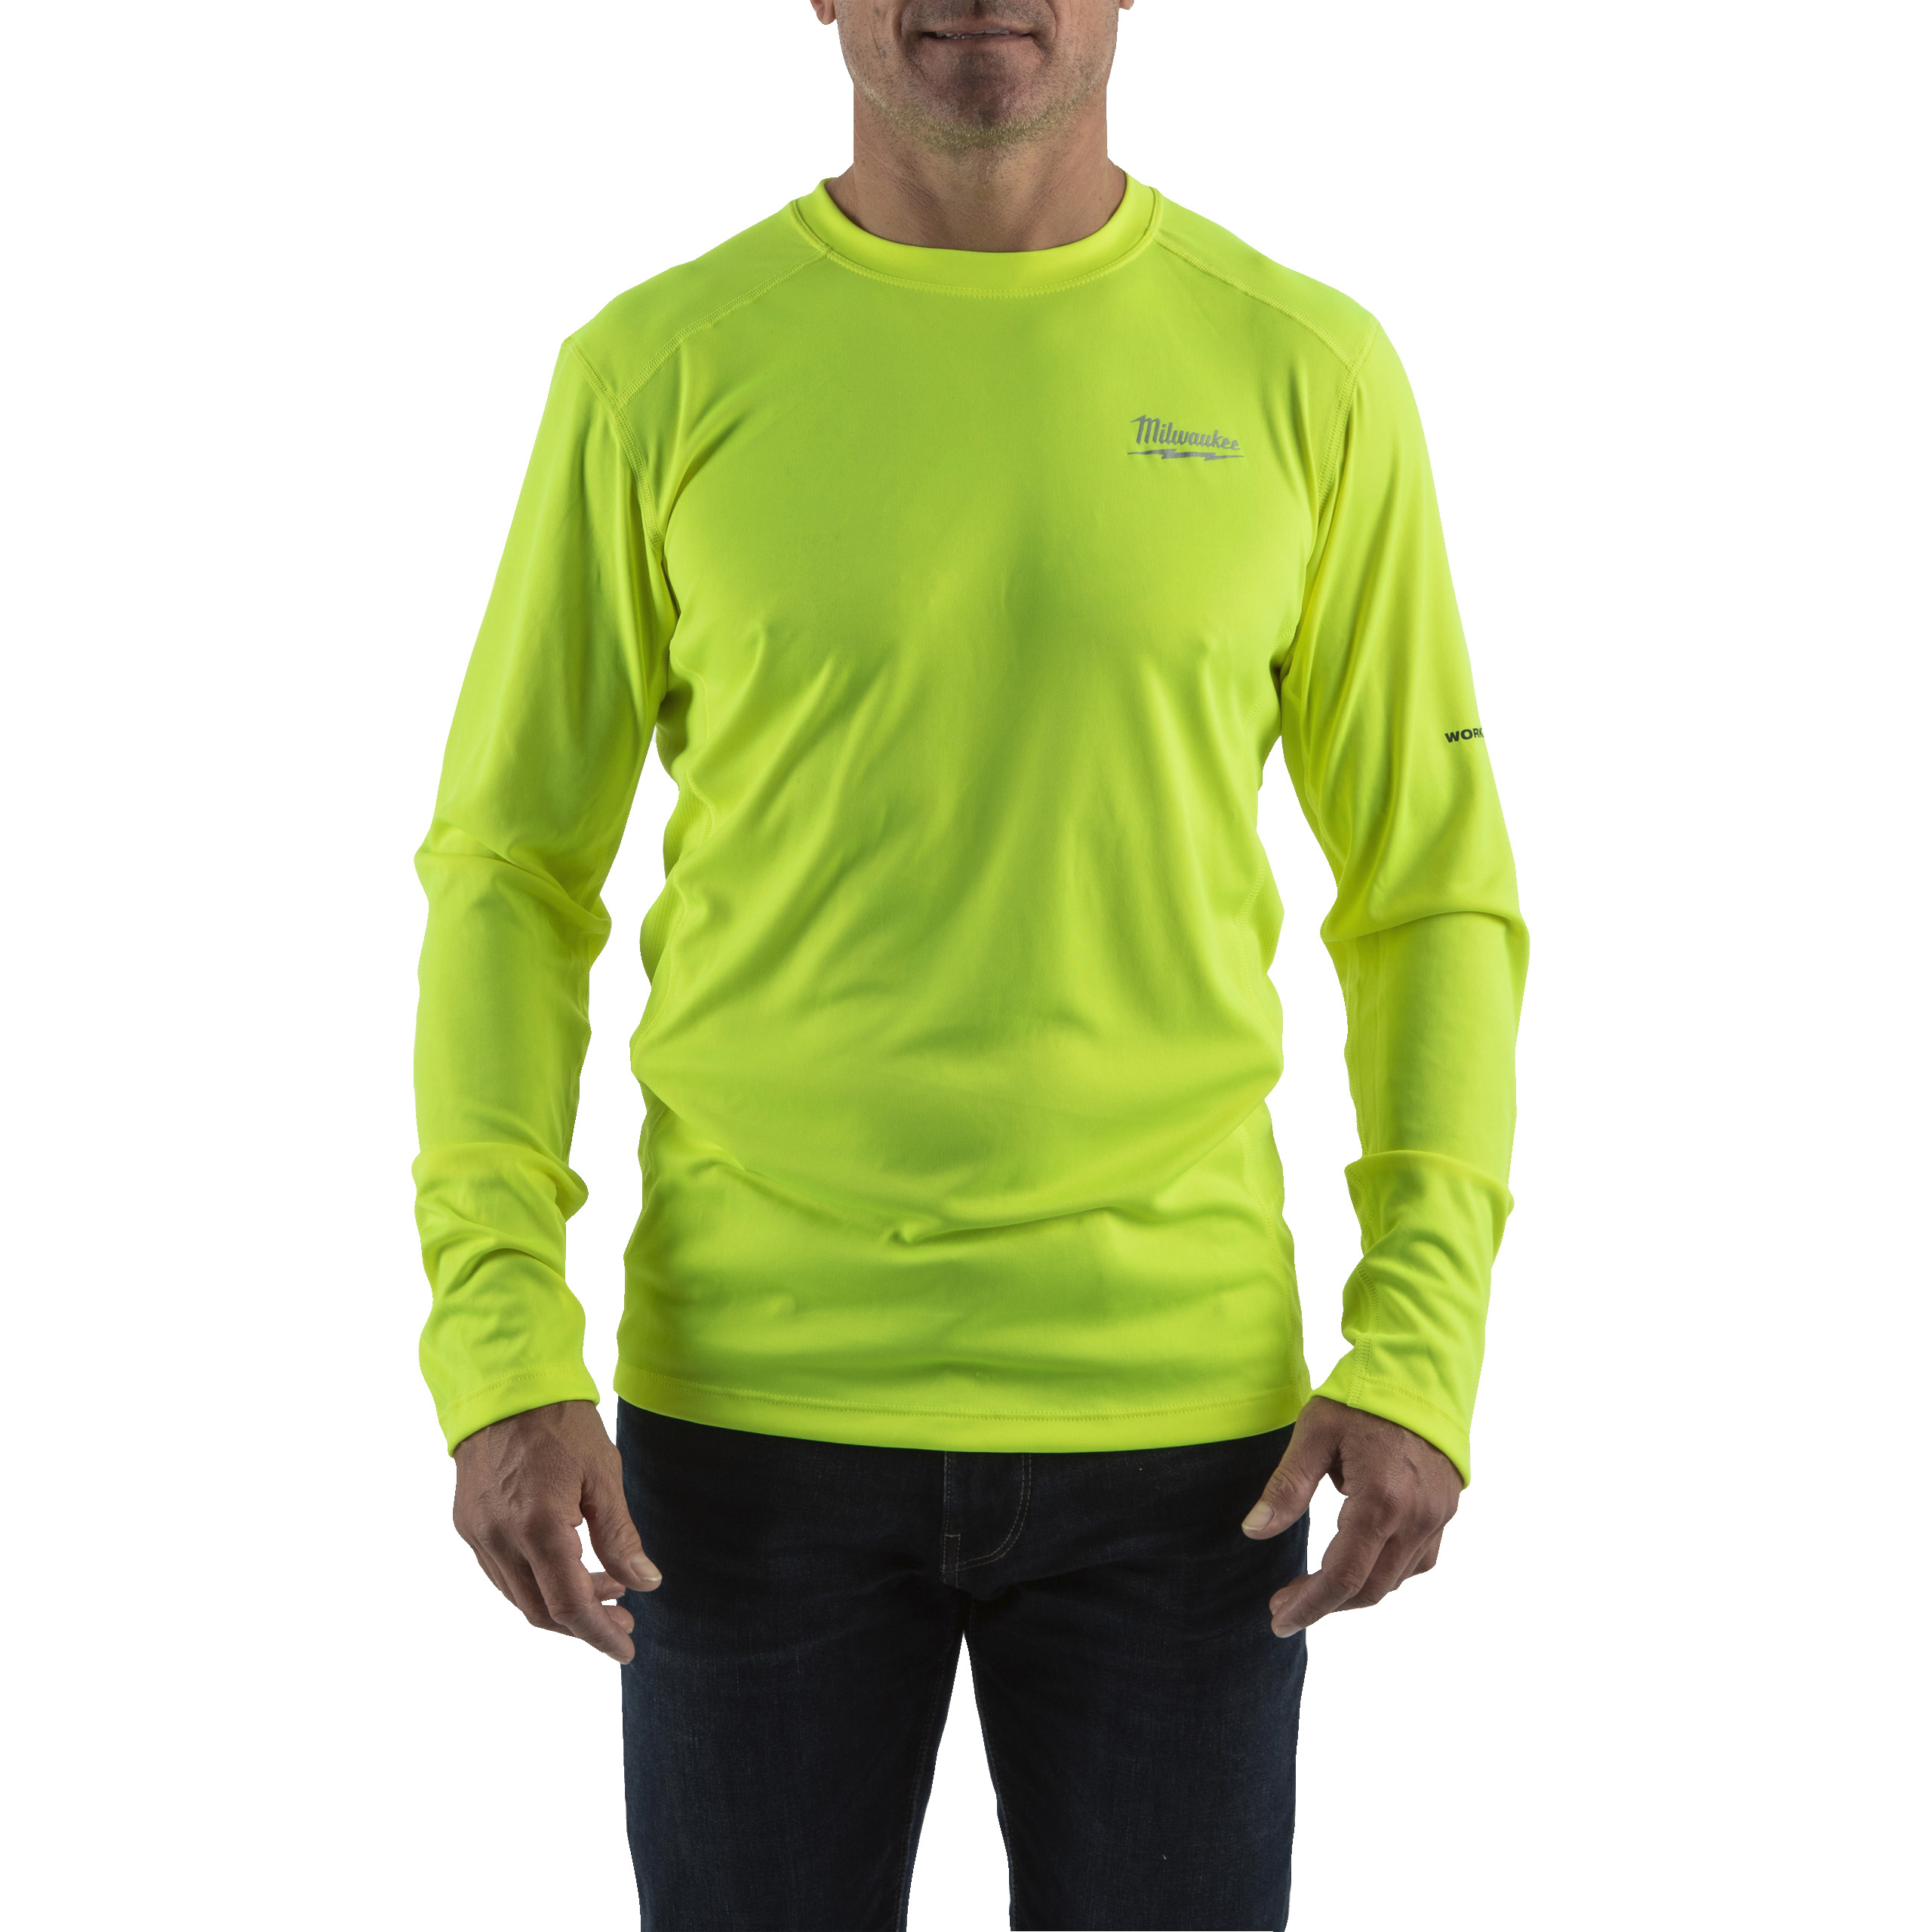 Funktions-Langarm-Shirt gelb mit UV-Schutz (WWLSYL-M)